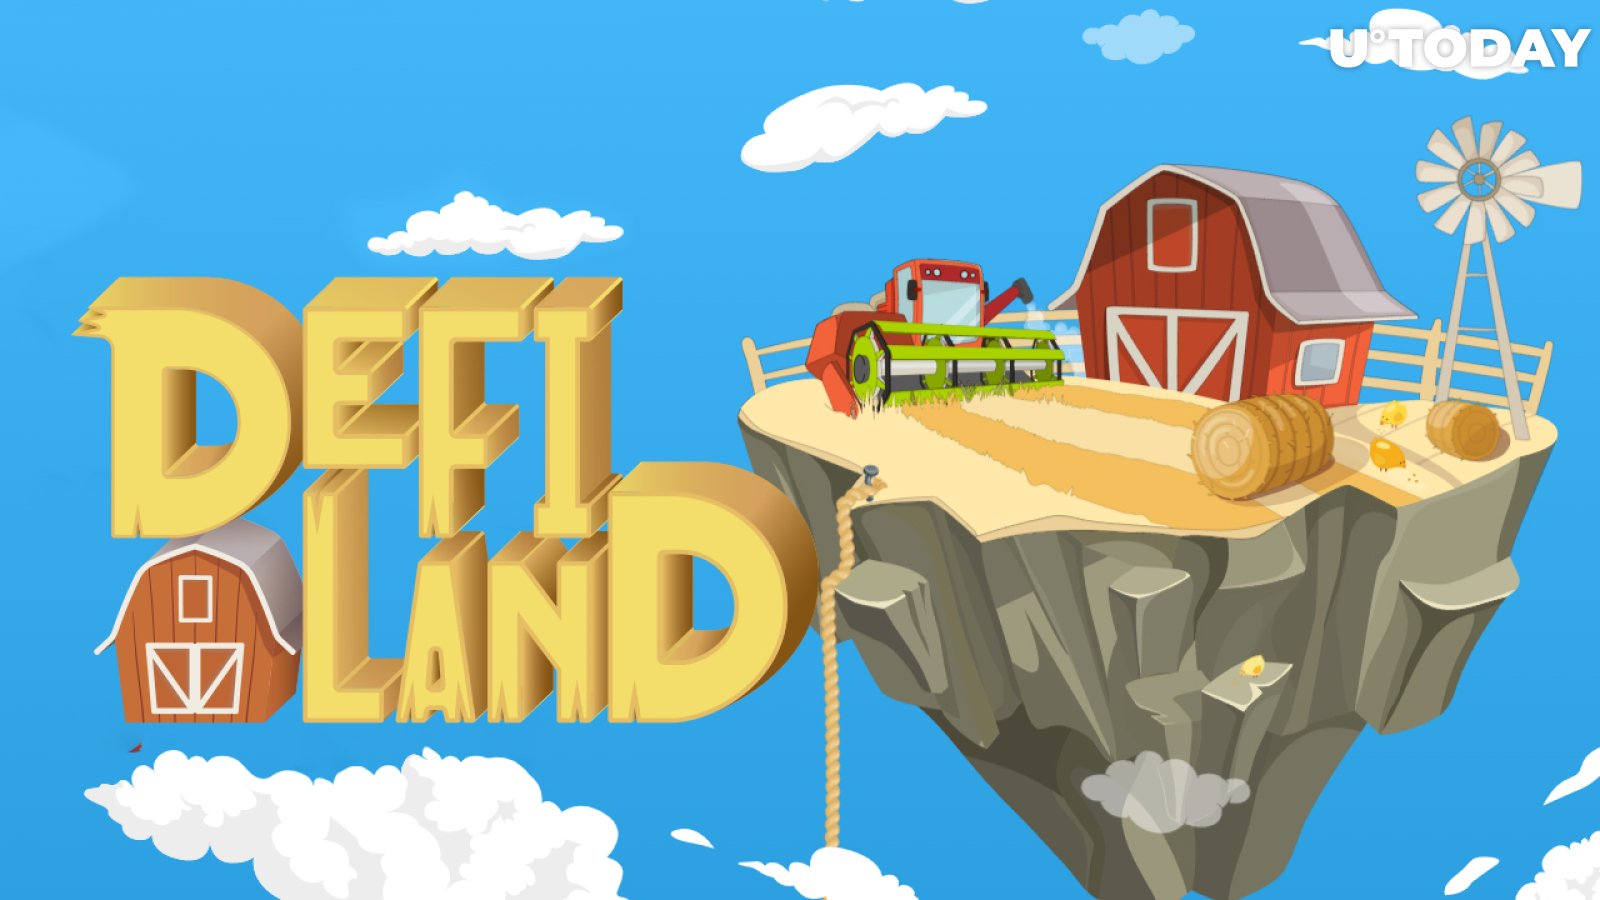 Solana's DeFi Land Announces First NFT Sale: Details